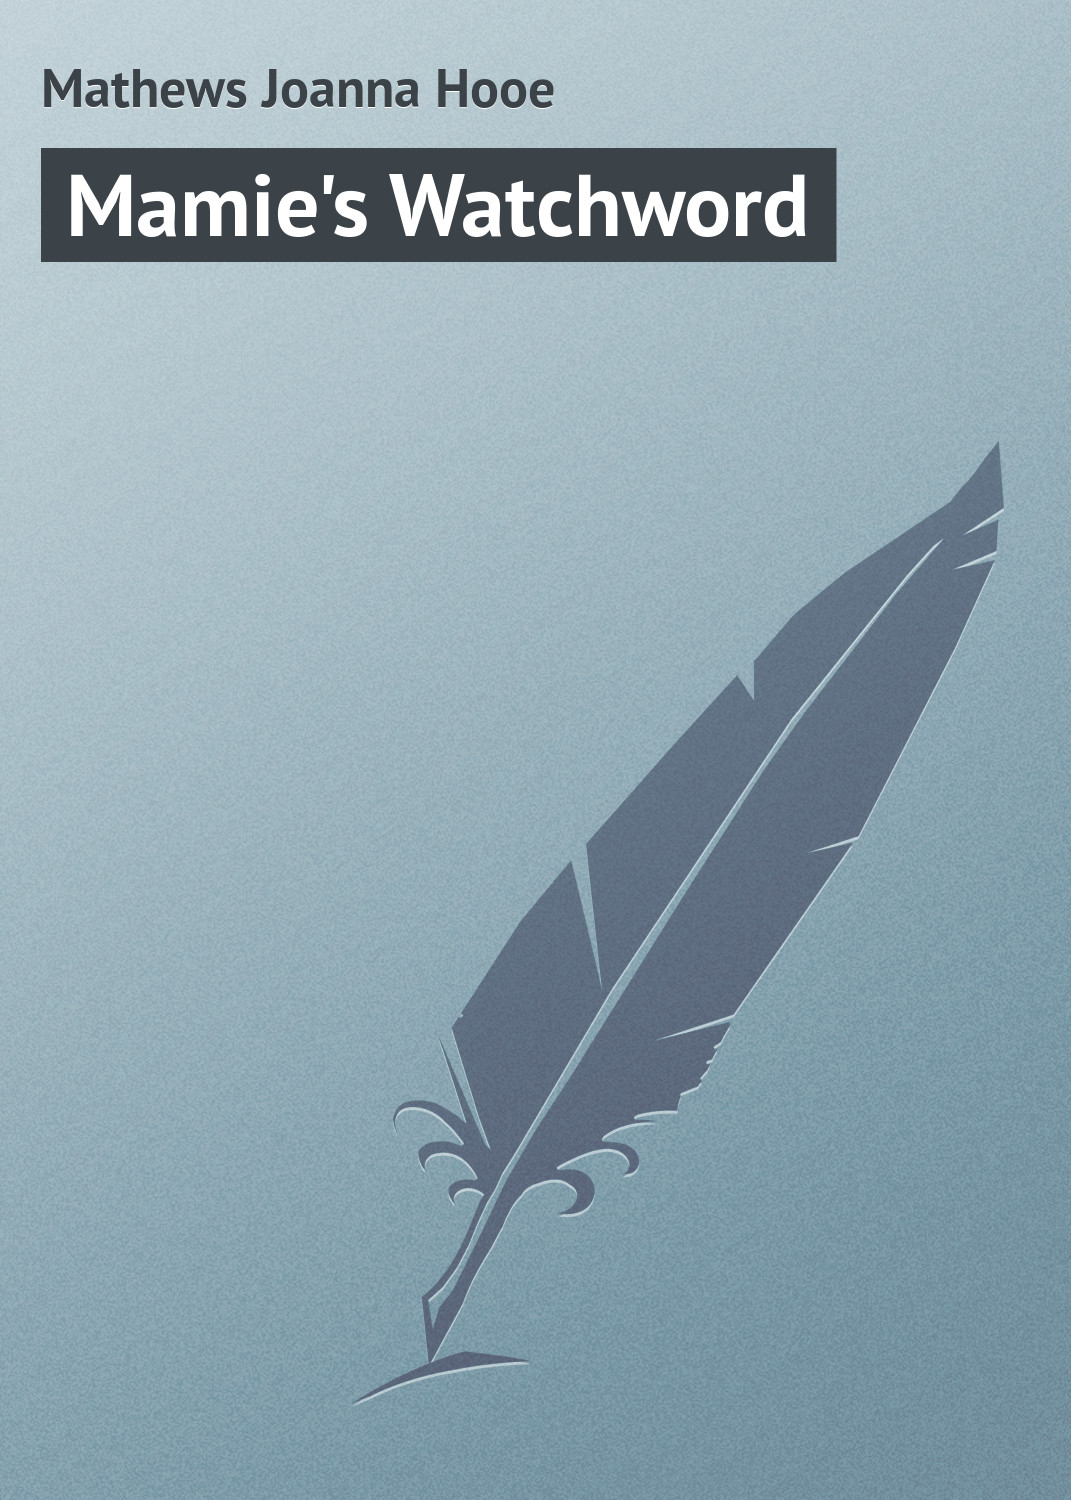 Книга Mamie's Watchword из серии , созданная Joanna Mathews, может относится к жанру Зарубежная классика, Иностранные языки. Стоимость электронной книги Mamie's Watchword с идентификатором 23162315 составляет 5.99 руб.